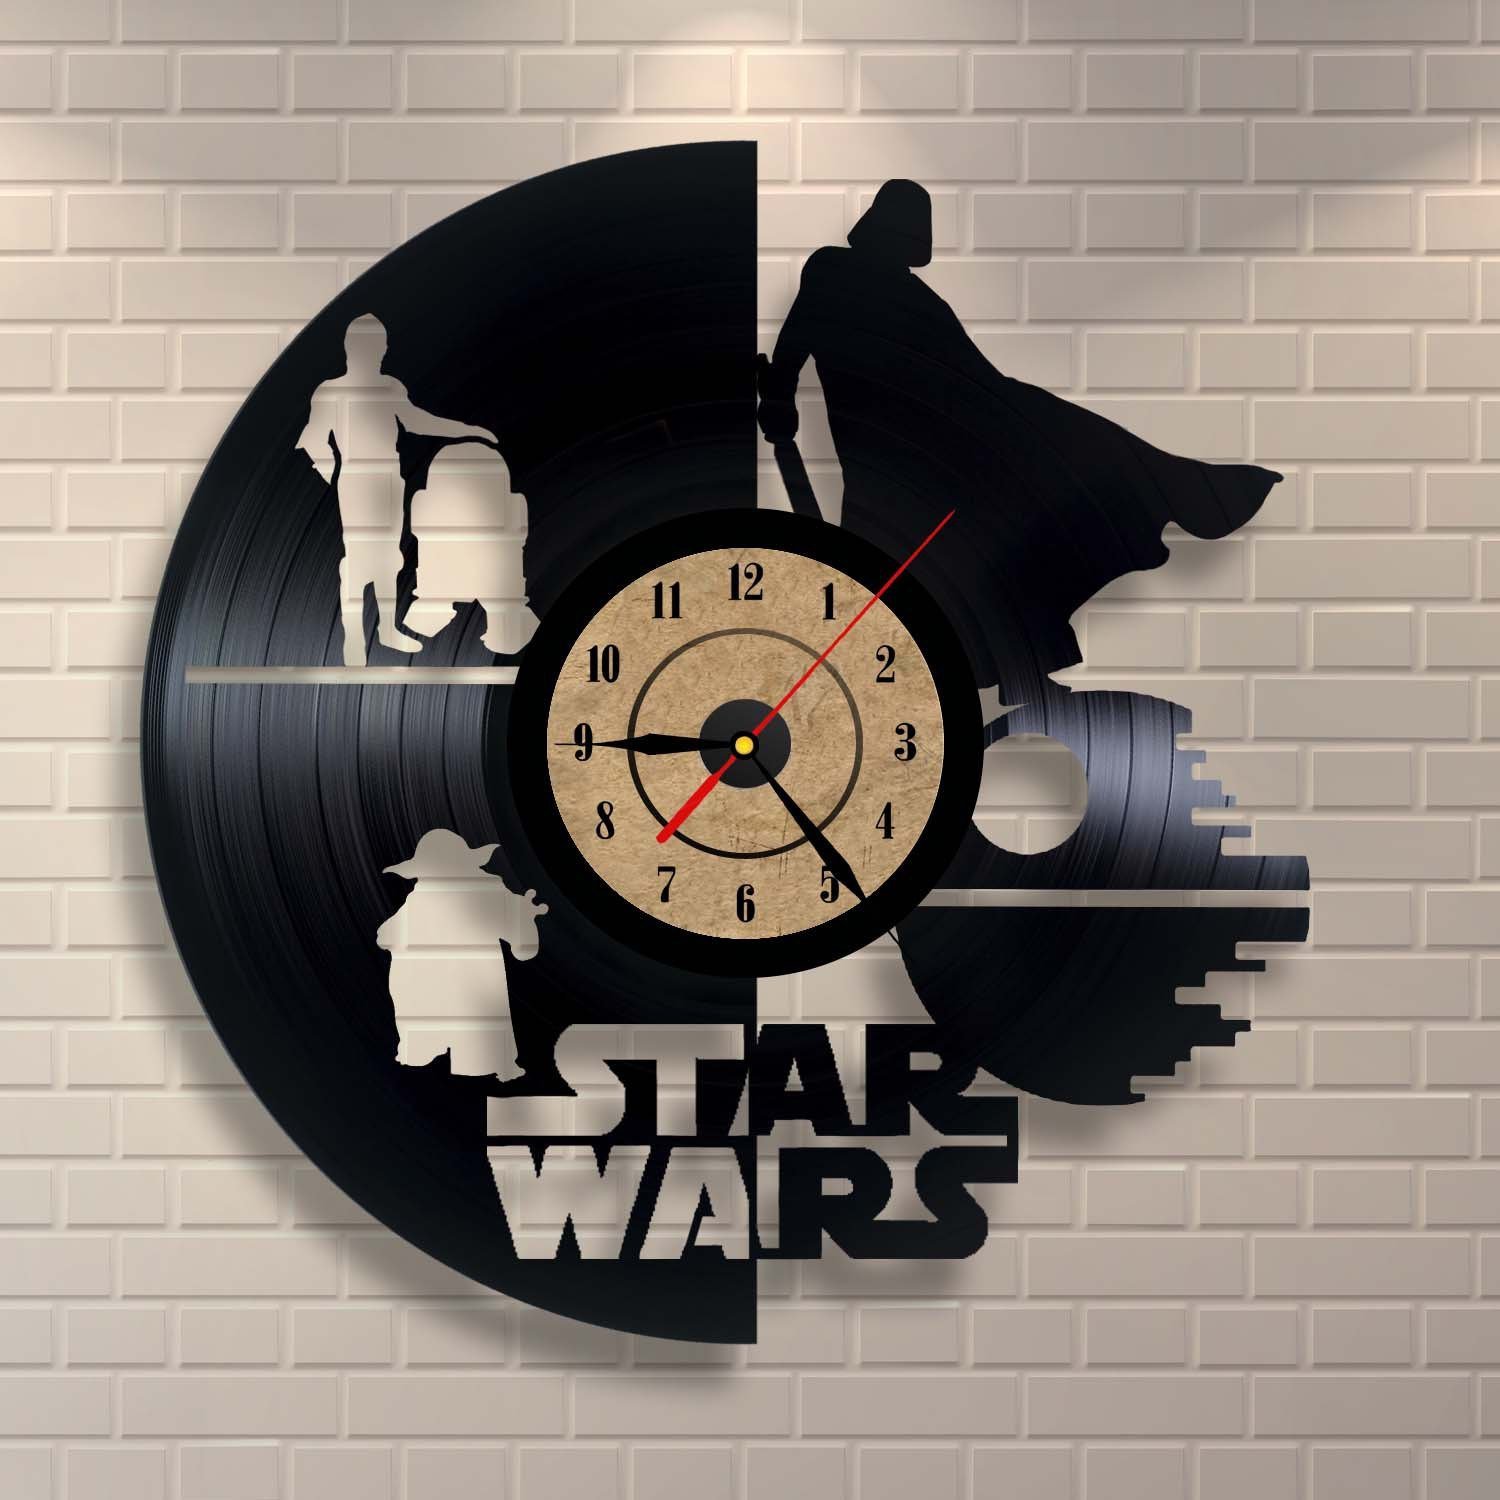 Vinyl Record Clock Star Wars Wall Decor Free Vector Free Vectors